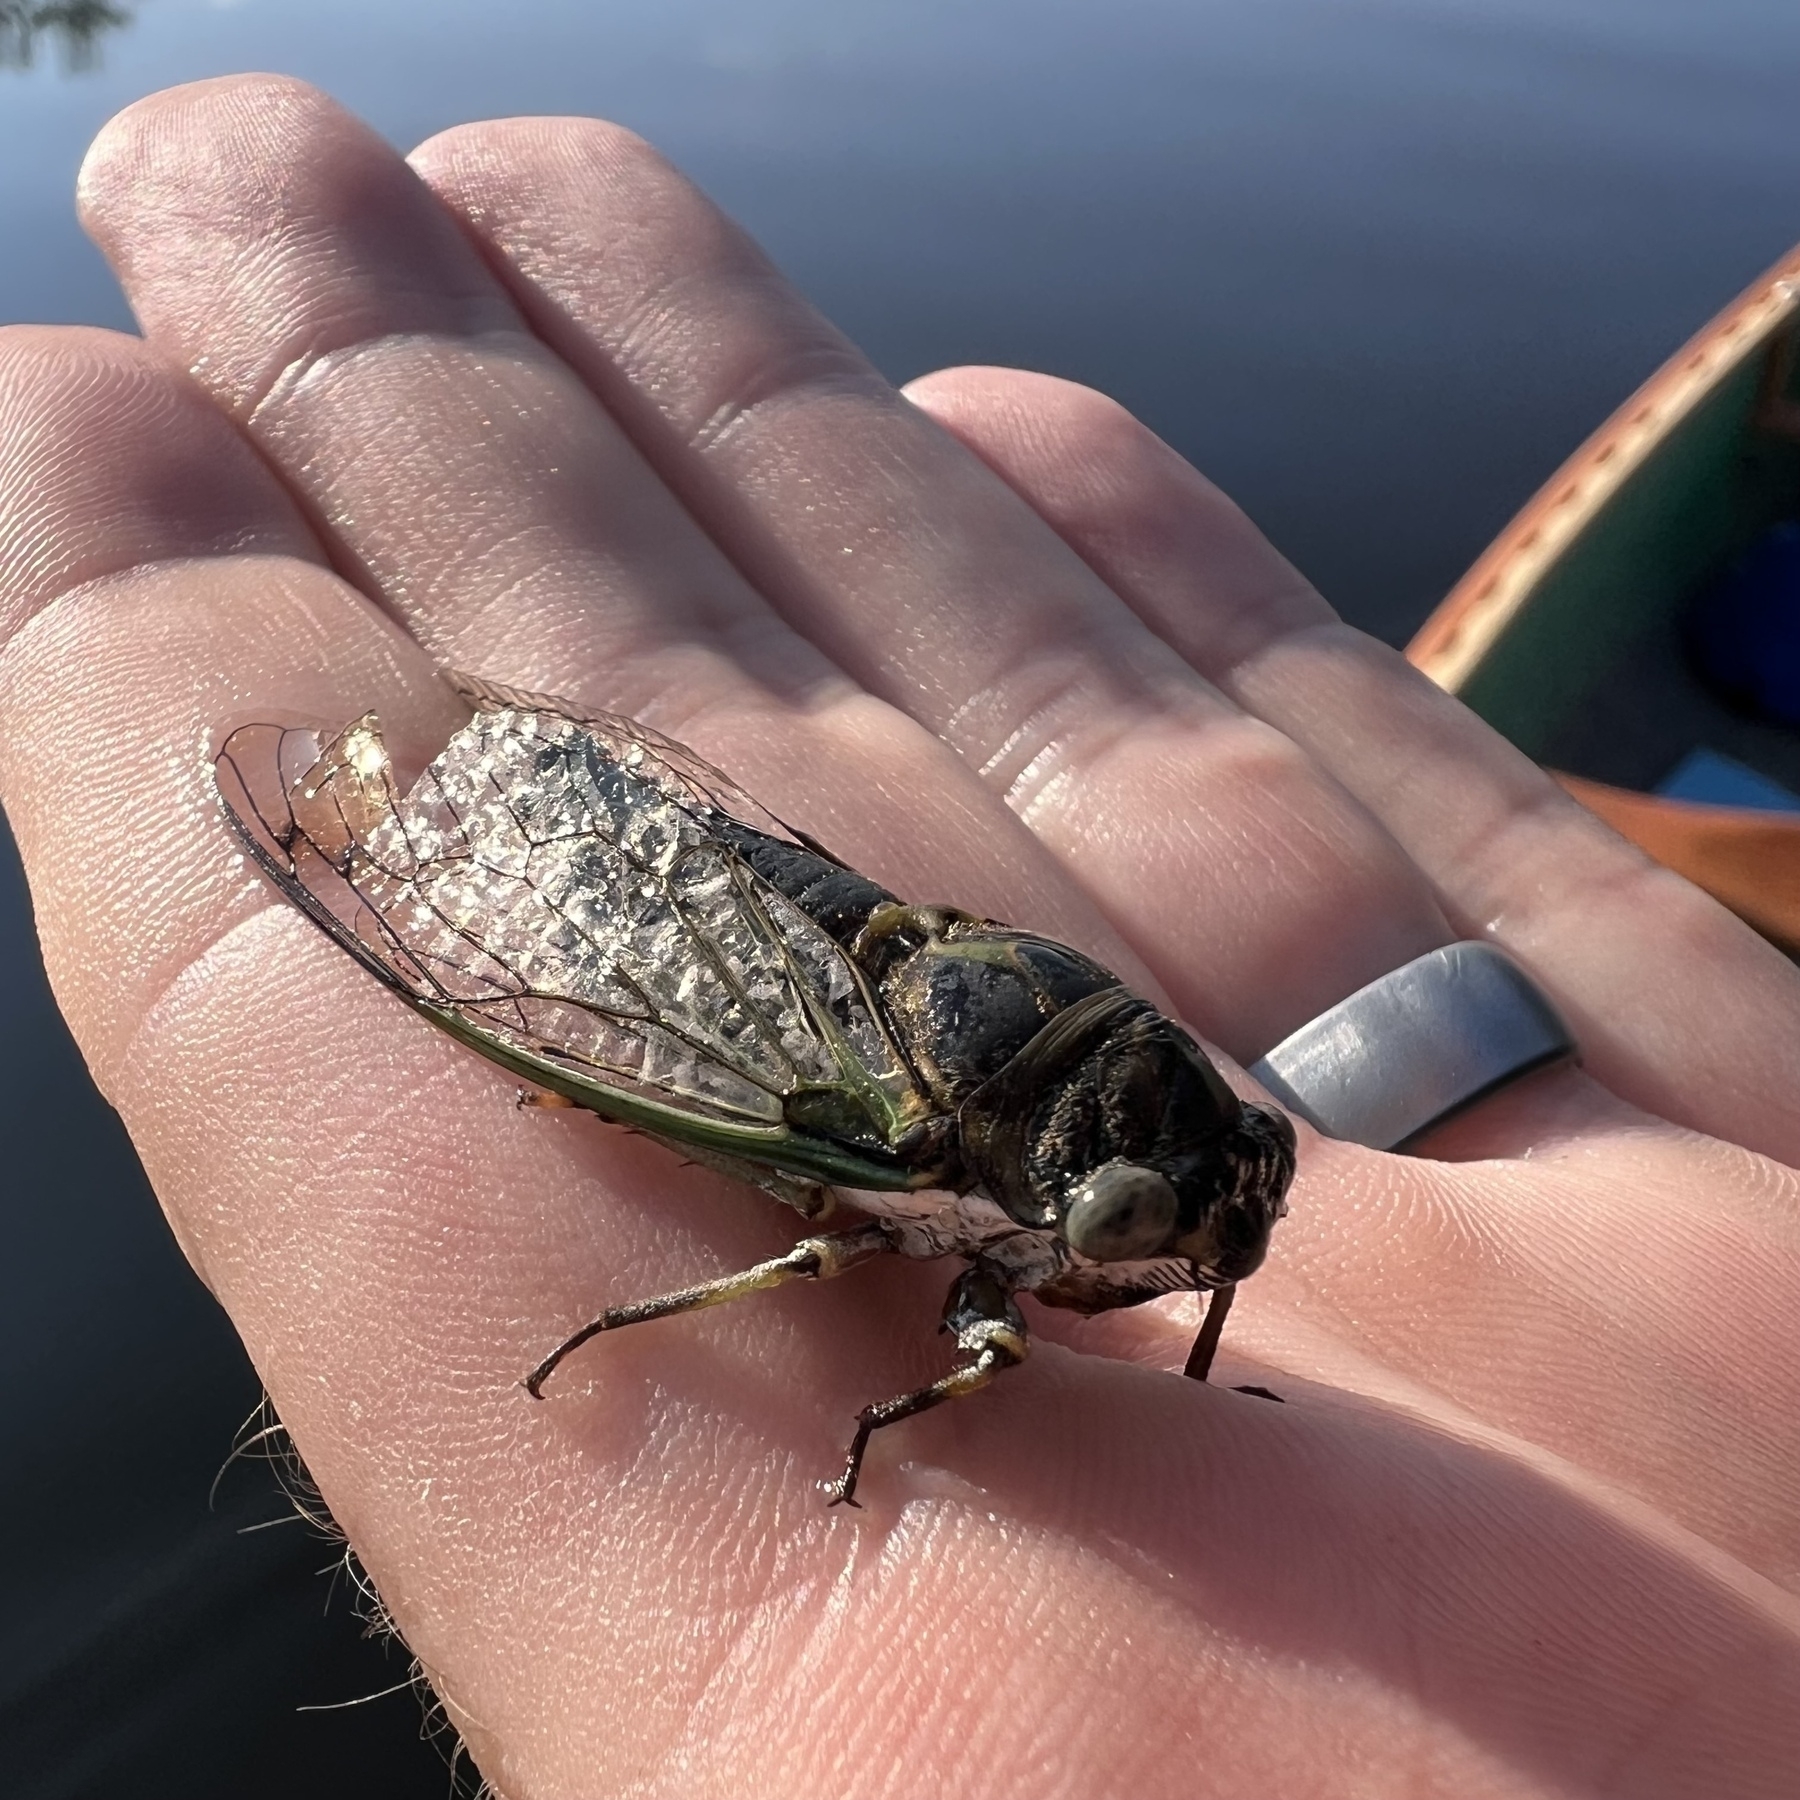 A cicada on my hand. 